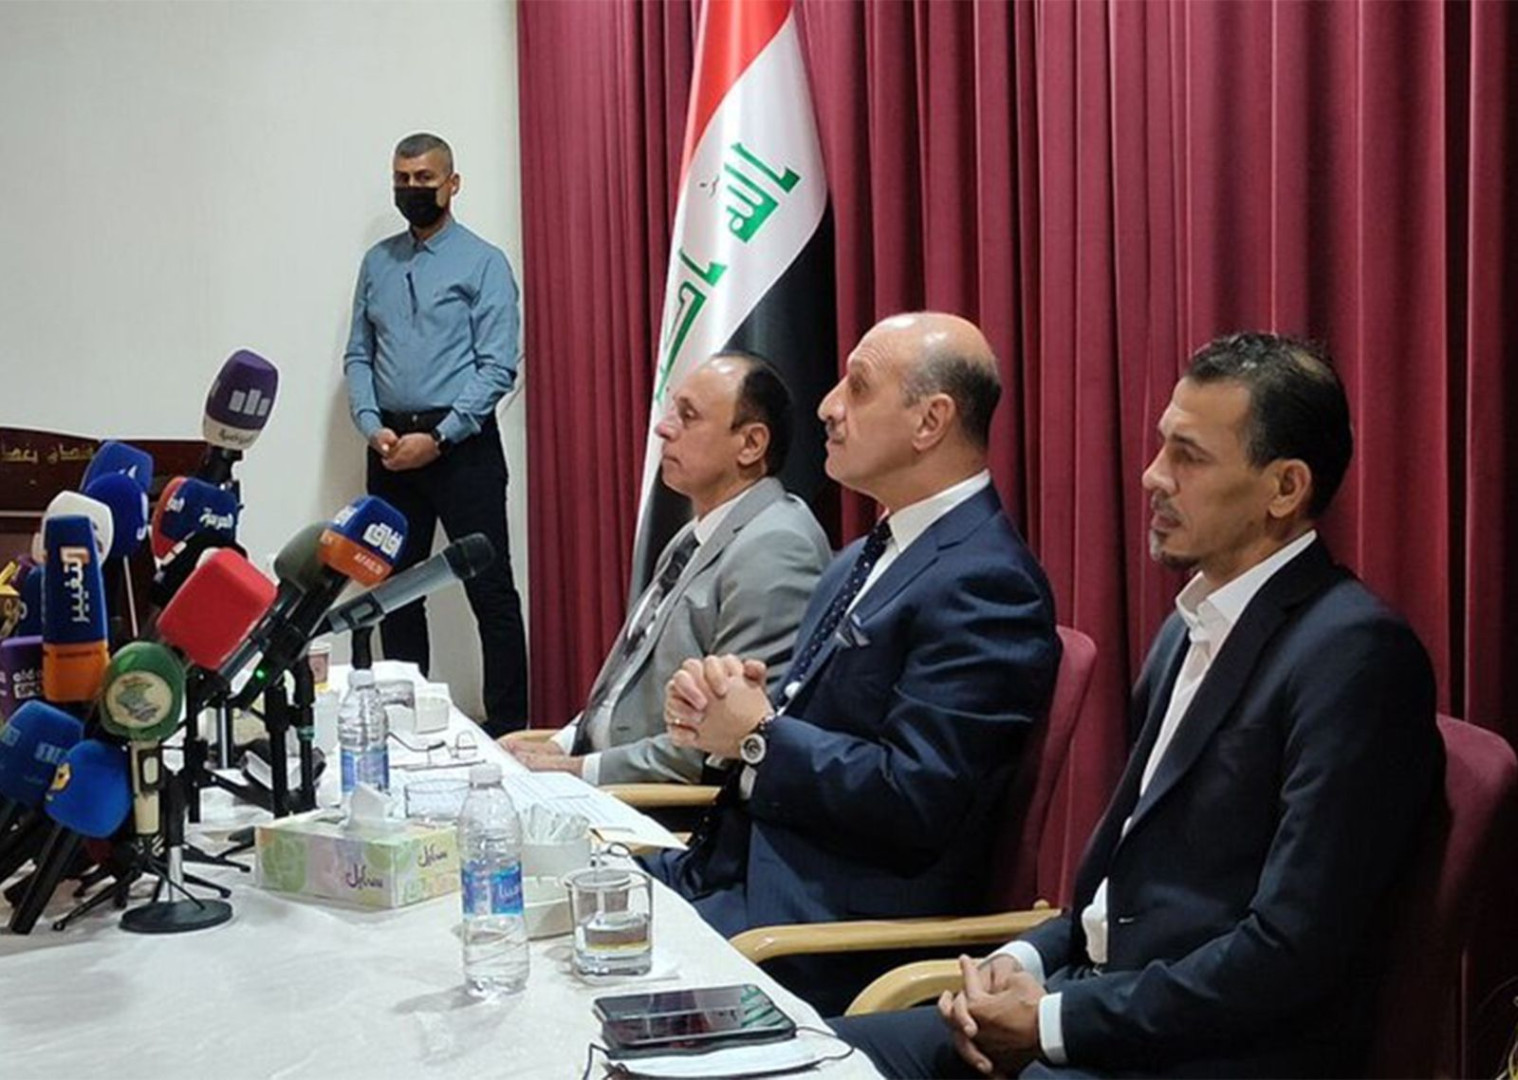 اتحاد الكرة العراقي يقرر حل اللجان